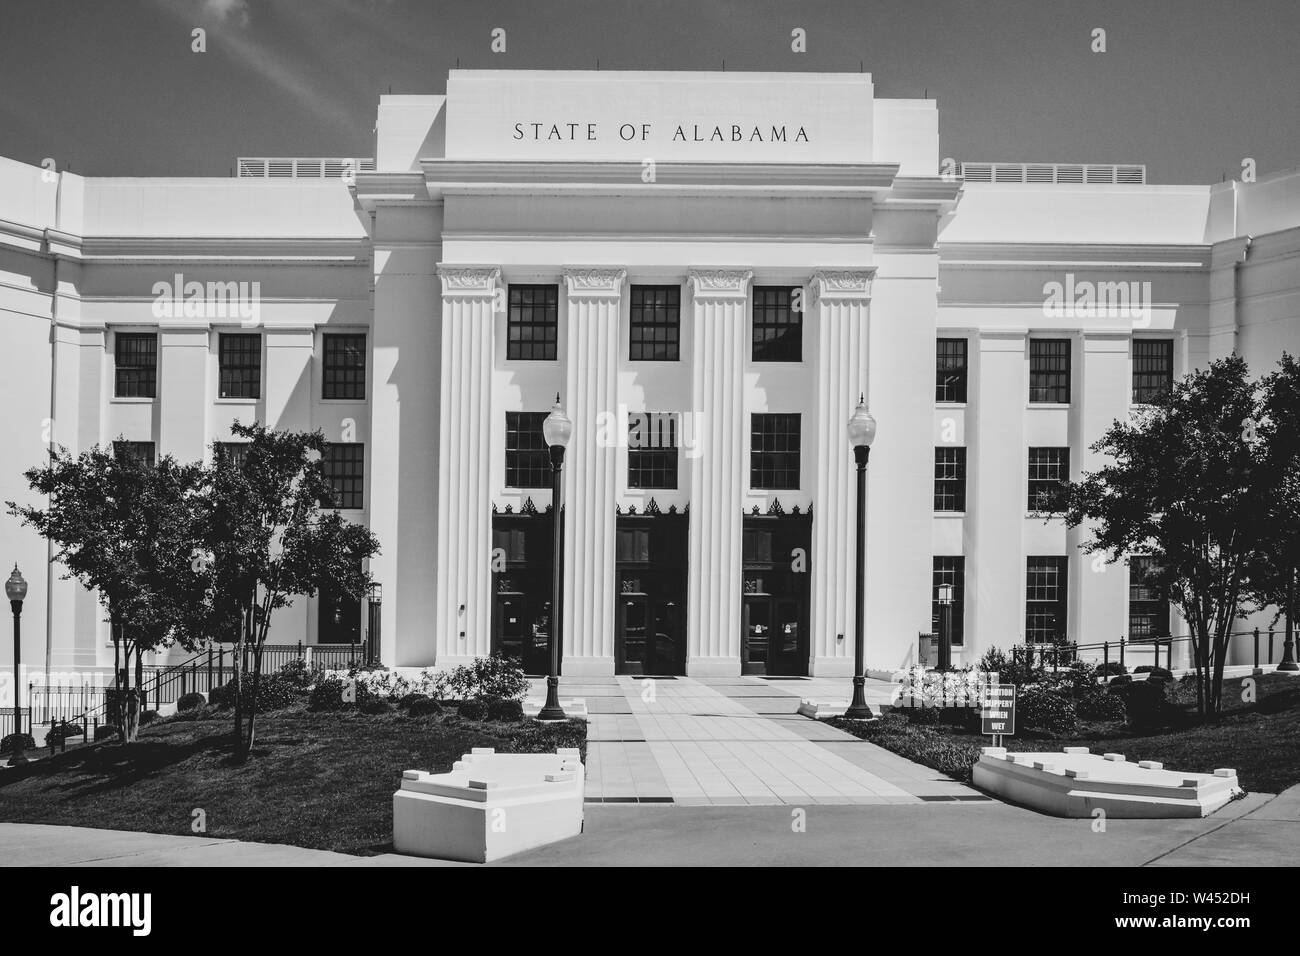 Procureur général de l'Alabama Immeuble de bureaux, pour l'état de l'Alabama, Montgomery, AL, États-Unis d'Amérique Banque D'Images